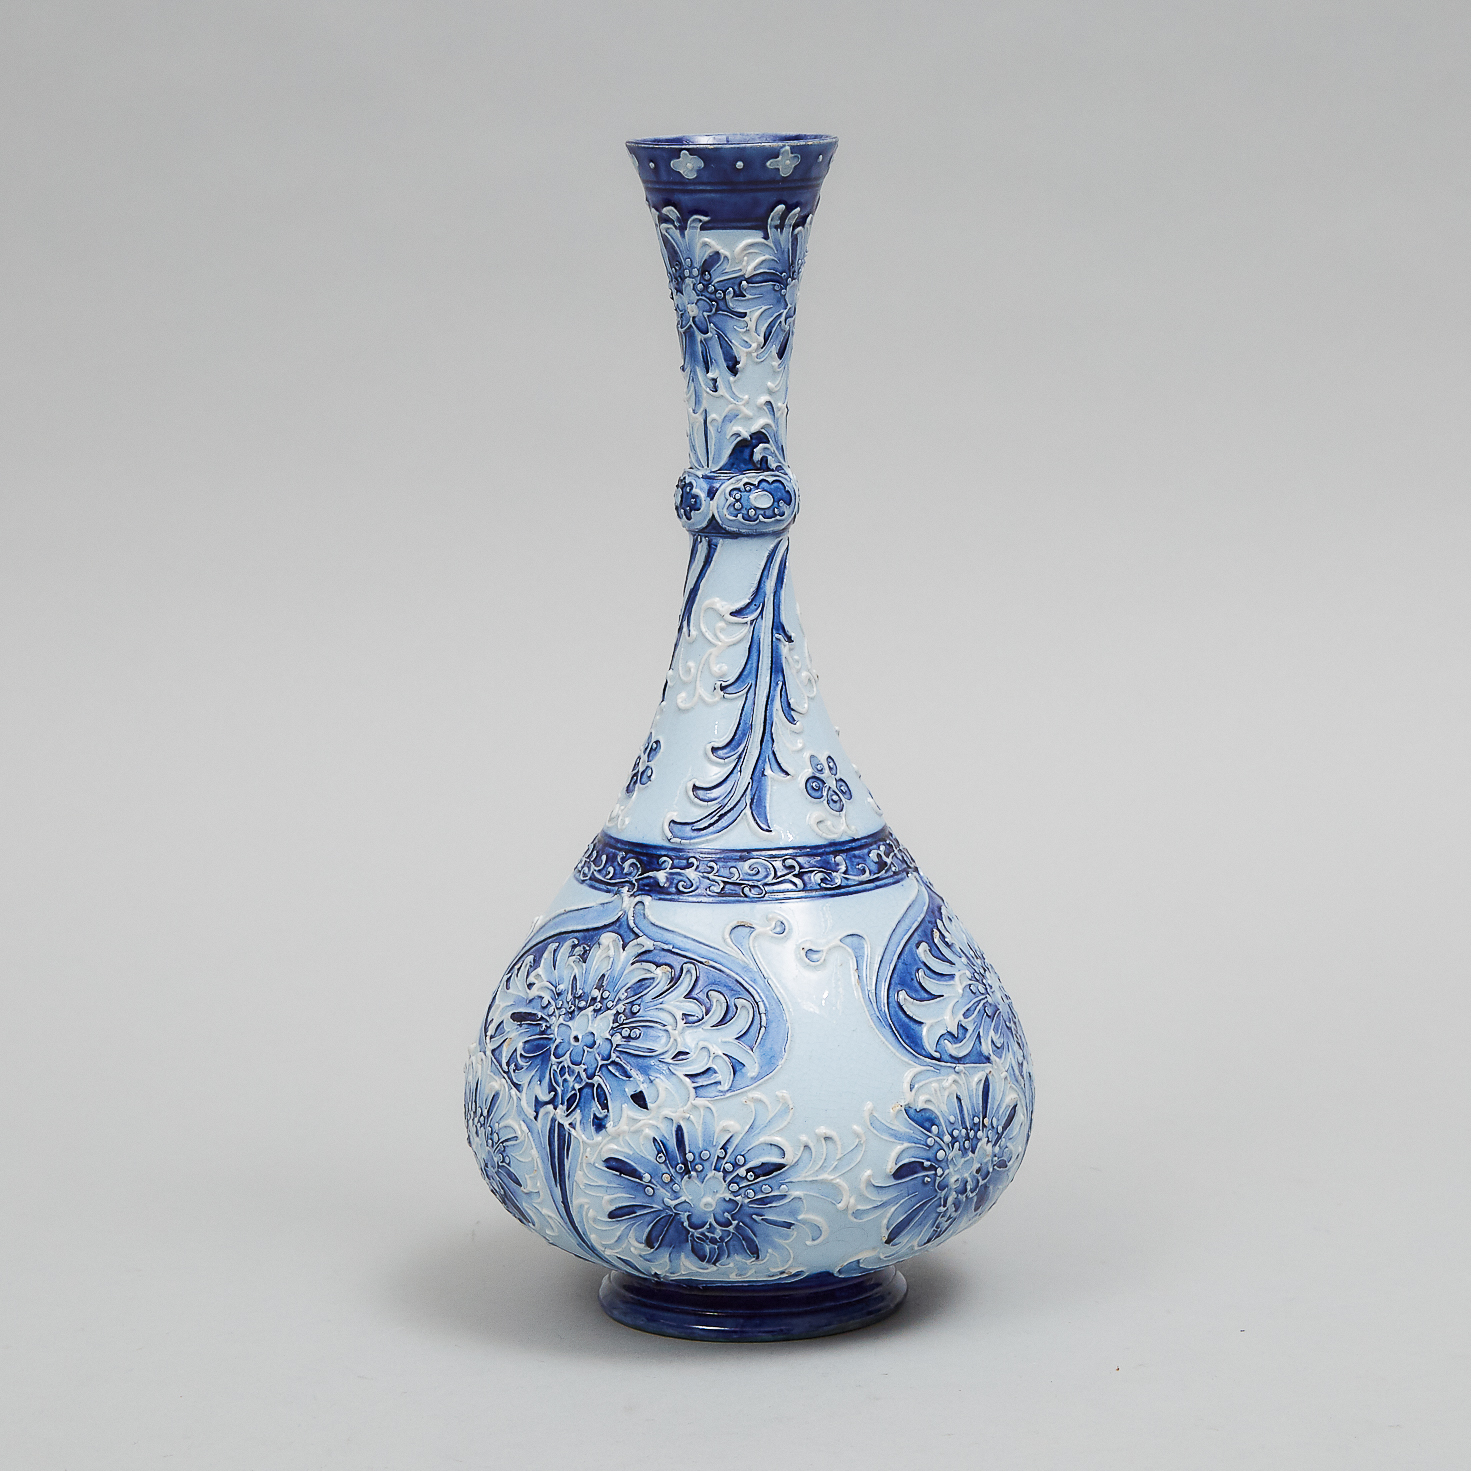 Macintyre Moorcroft Florian Cornflower Vase, c.1900